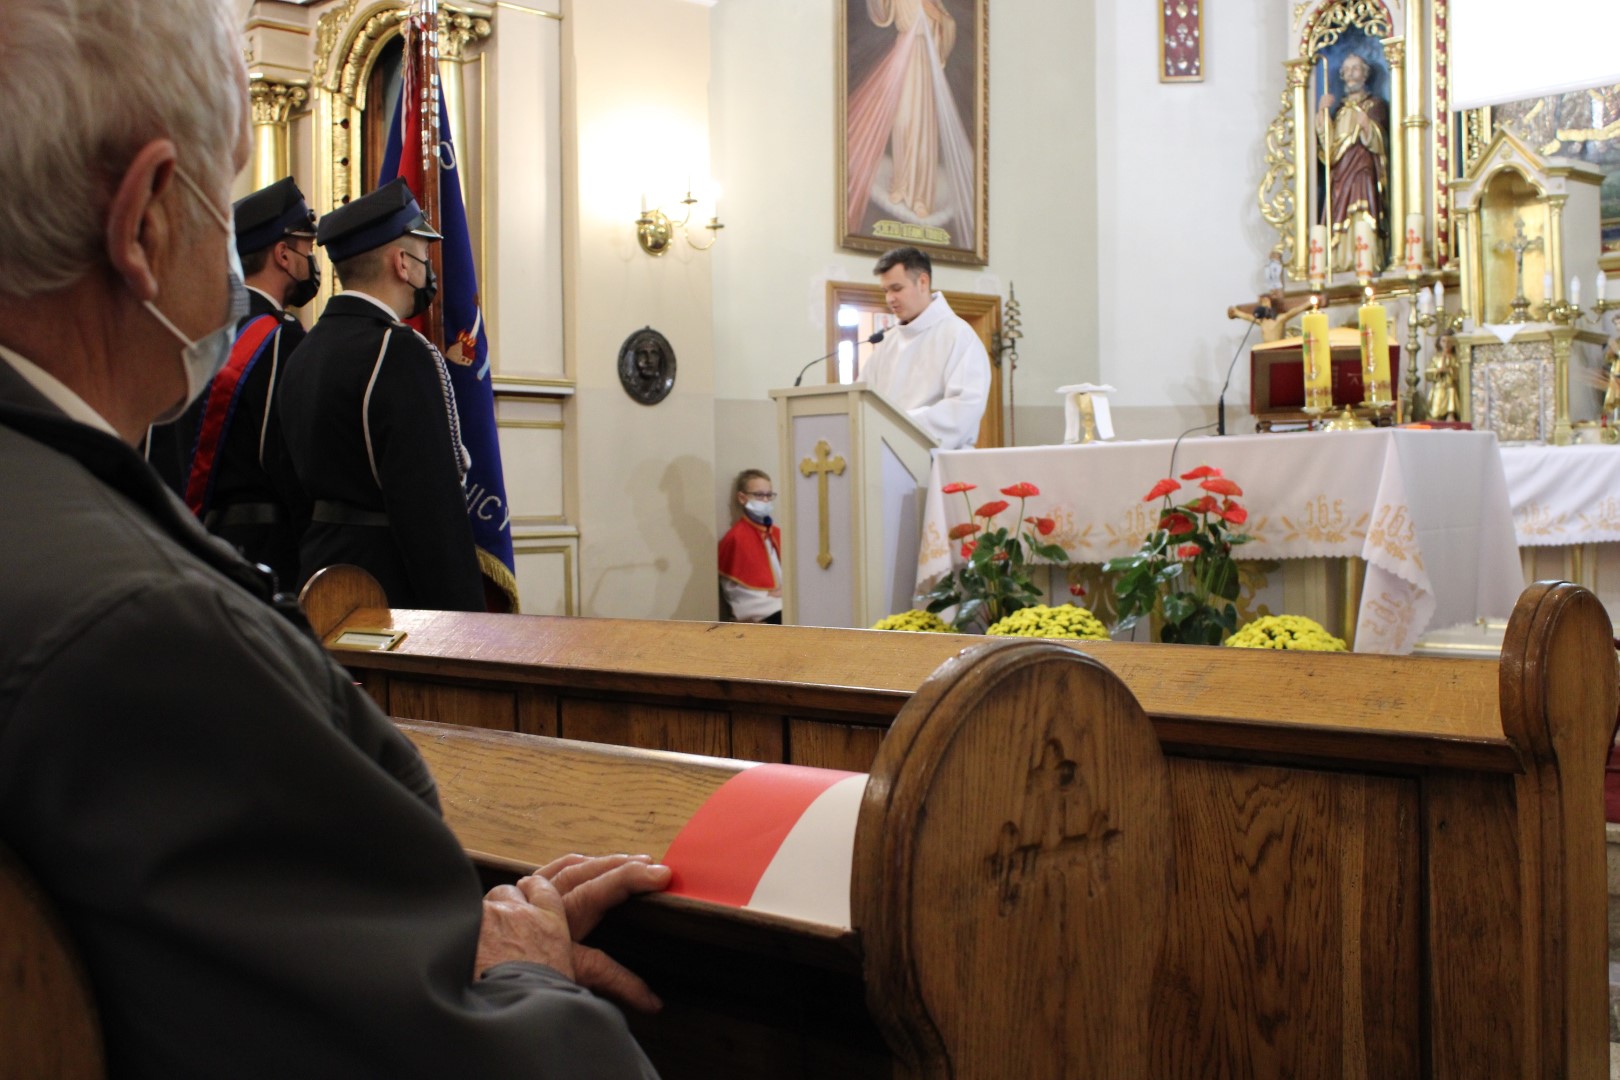 Na zdjęciu znajduje się ksiądz odprawiający mszę świętą za Ojczyznę z okazji Święta Odzyskania przez Polskę Niepodległości.